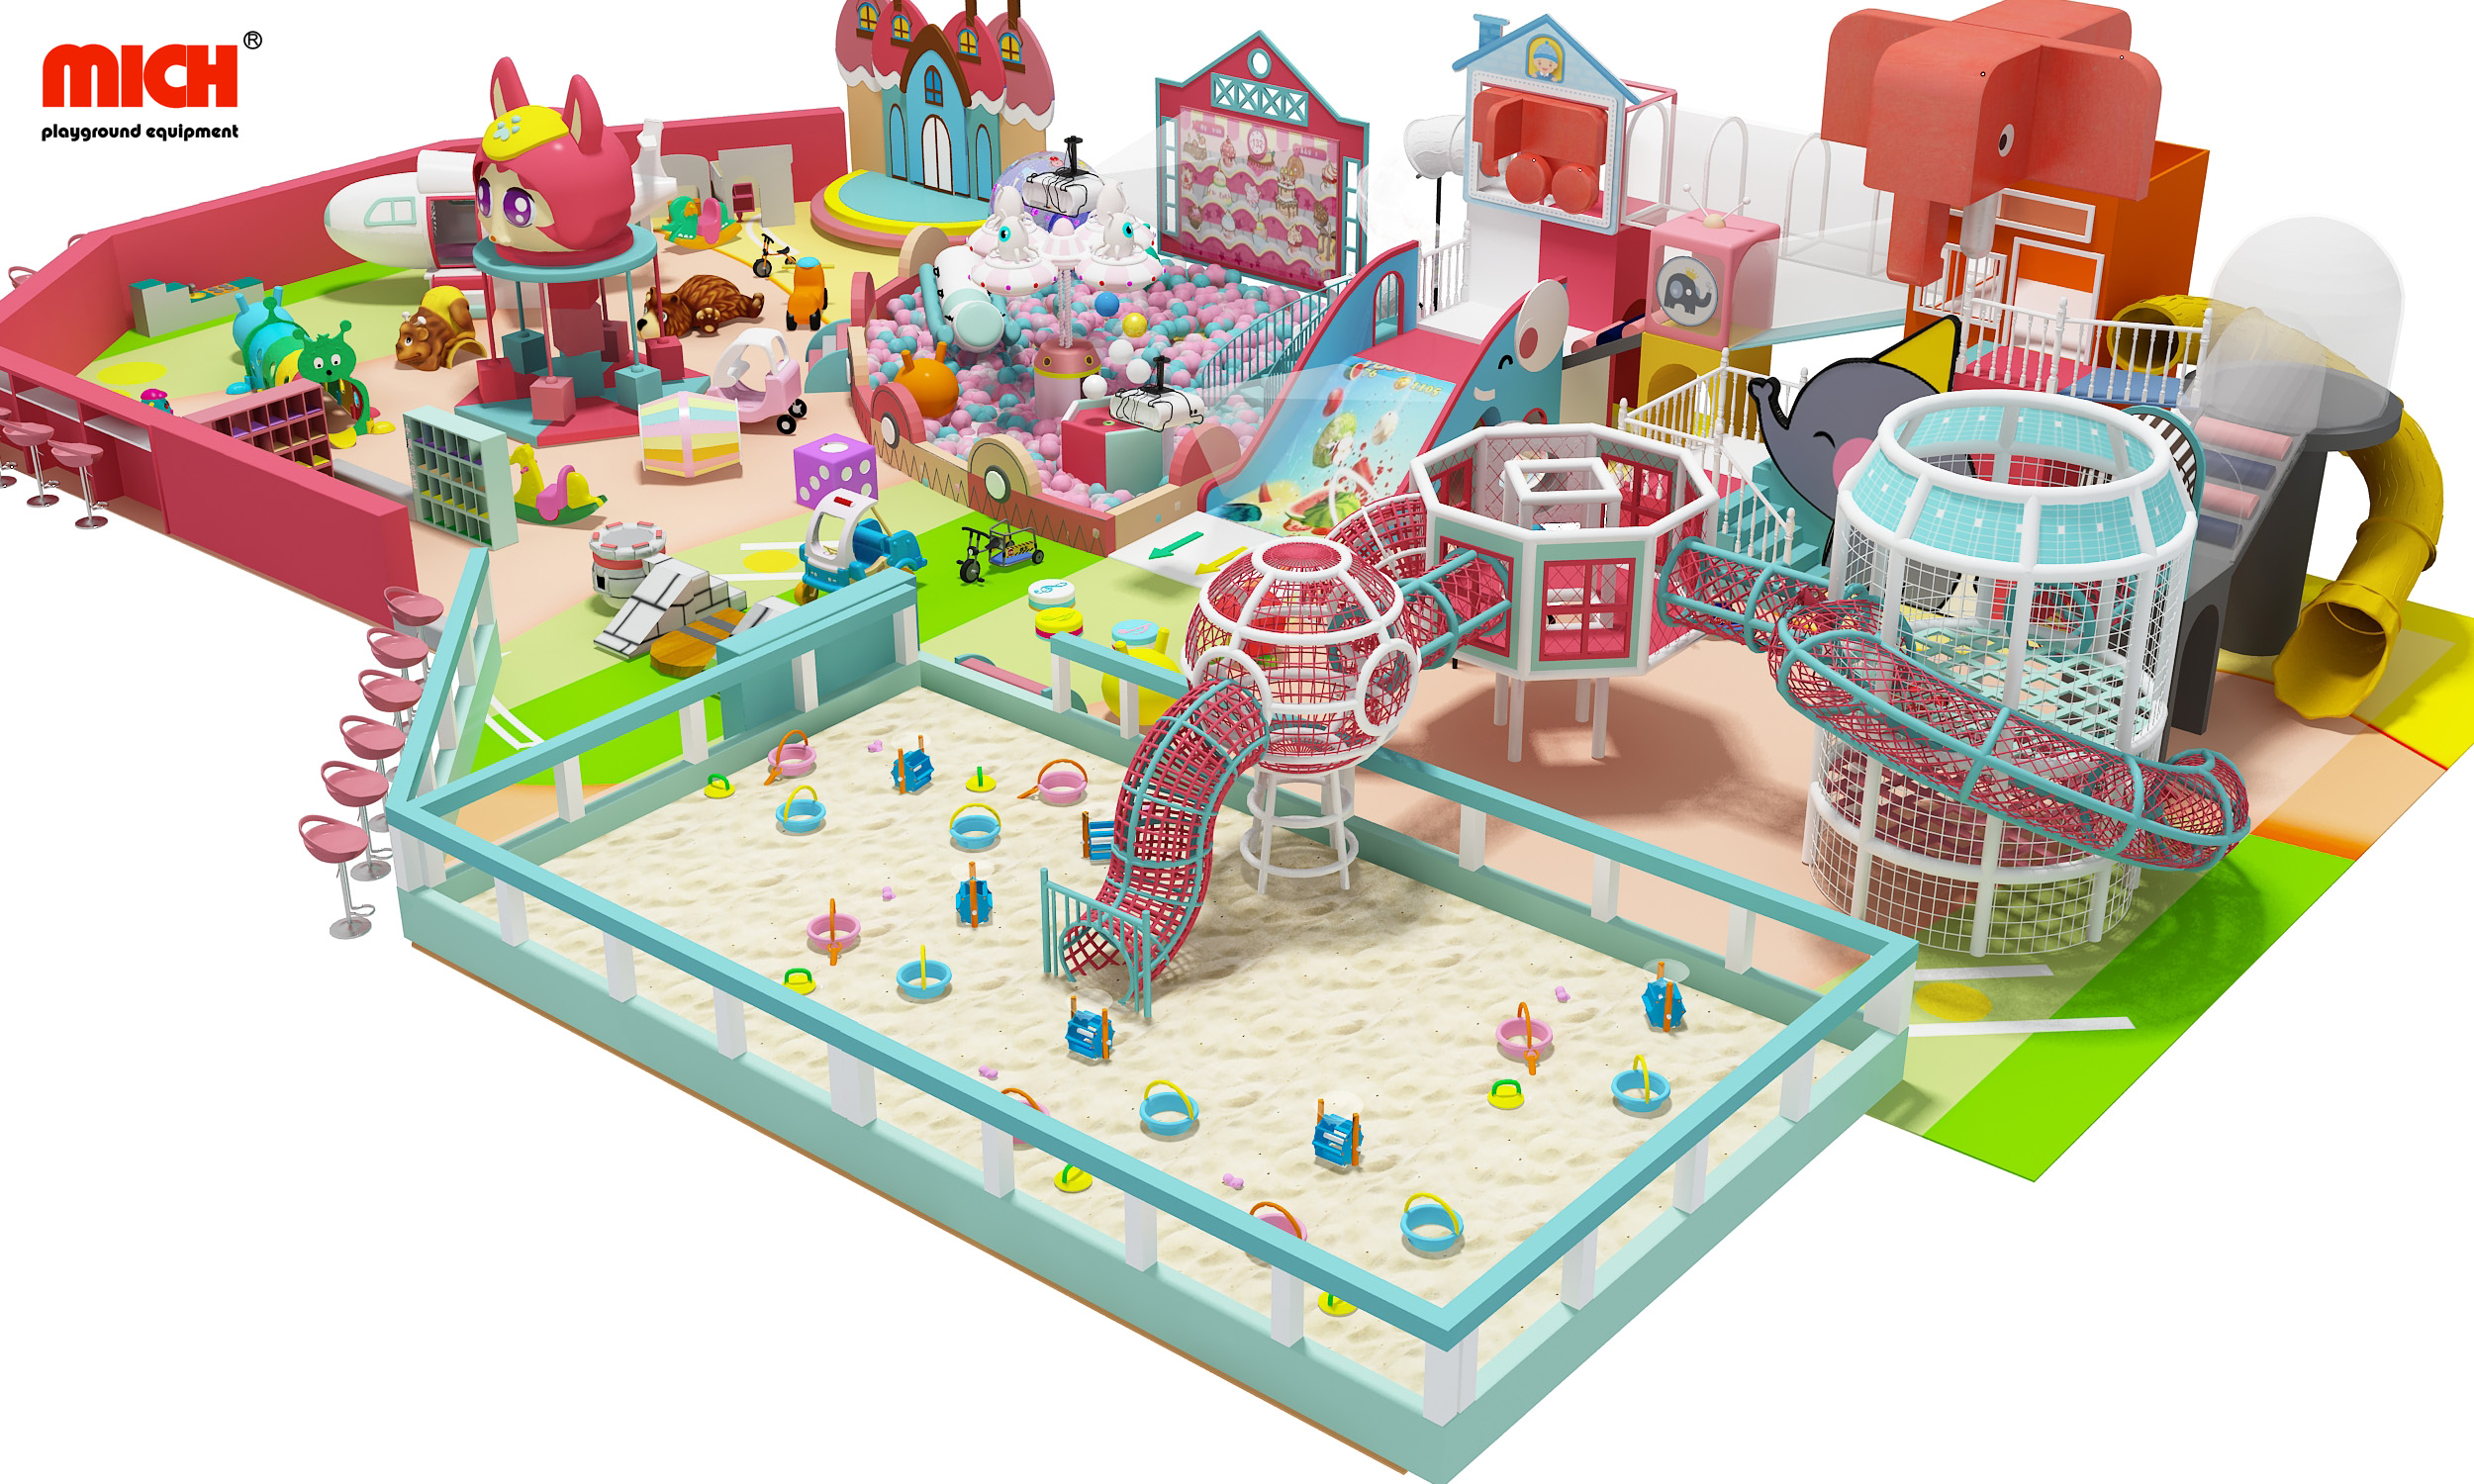 Коммерческая розовая тематическая детская игровая площадка